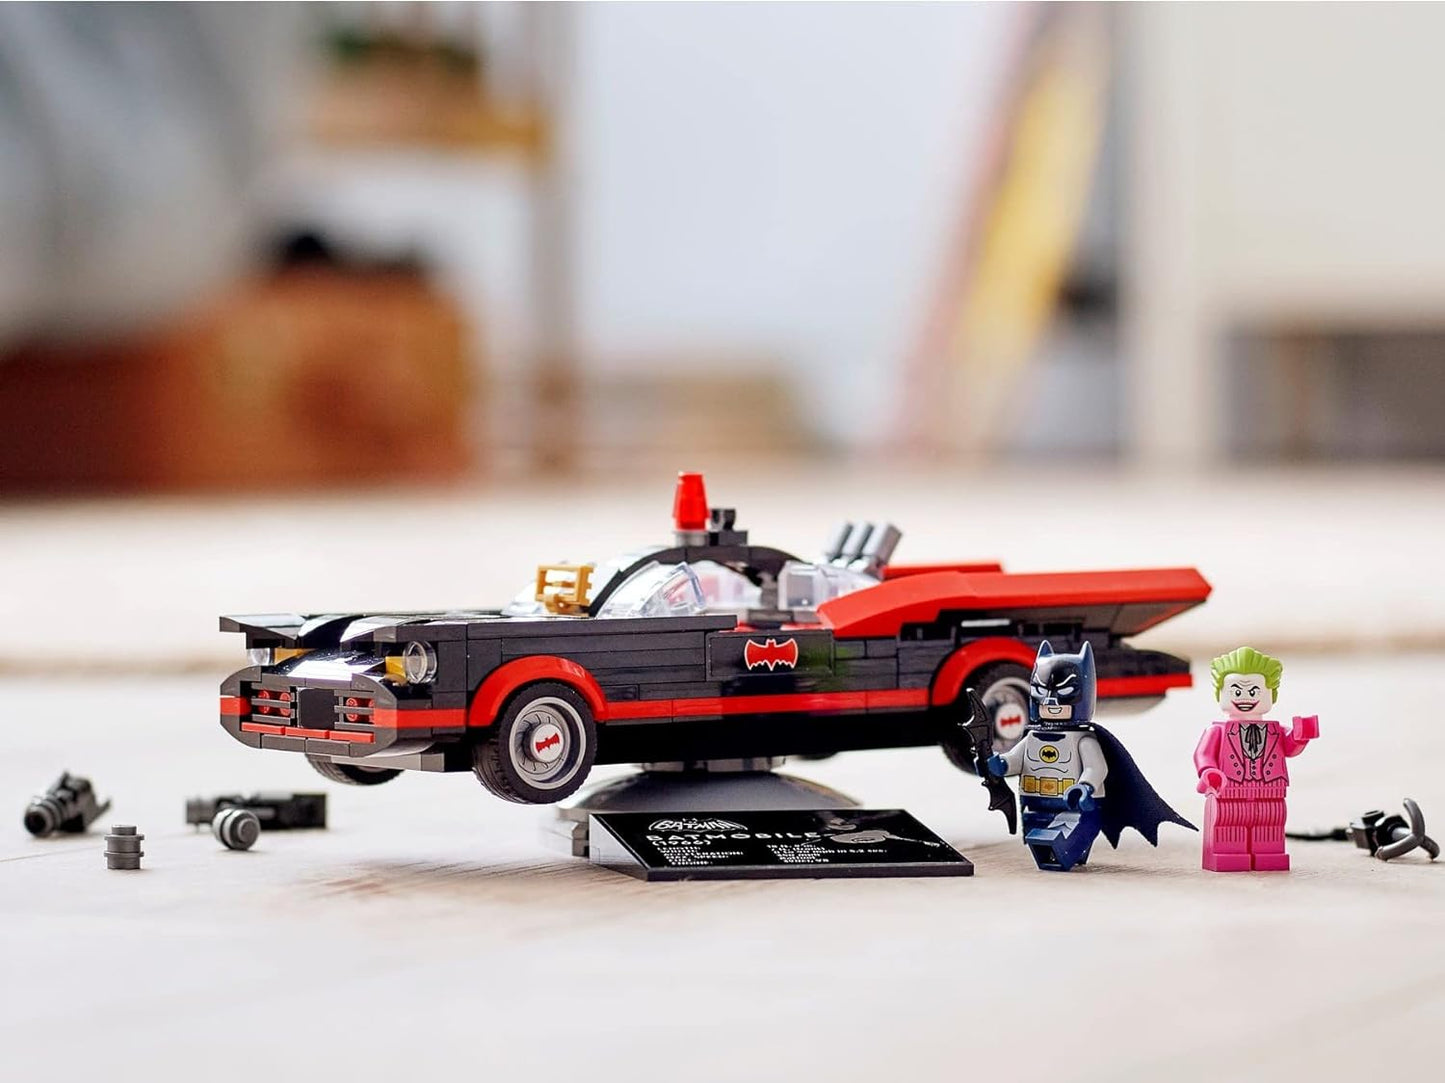 Lego Batman Classic Batmobile 76188 Building Toy with Joker Minifigure Authentic Construction Block Set